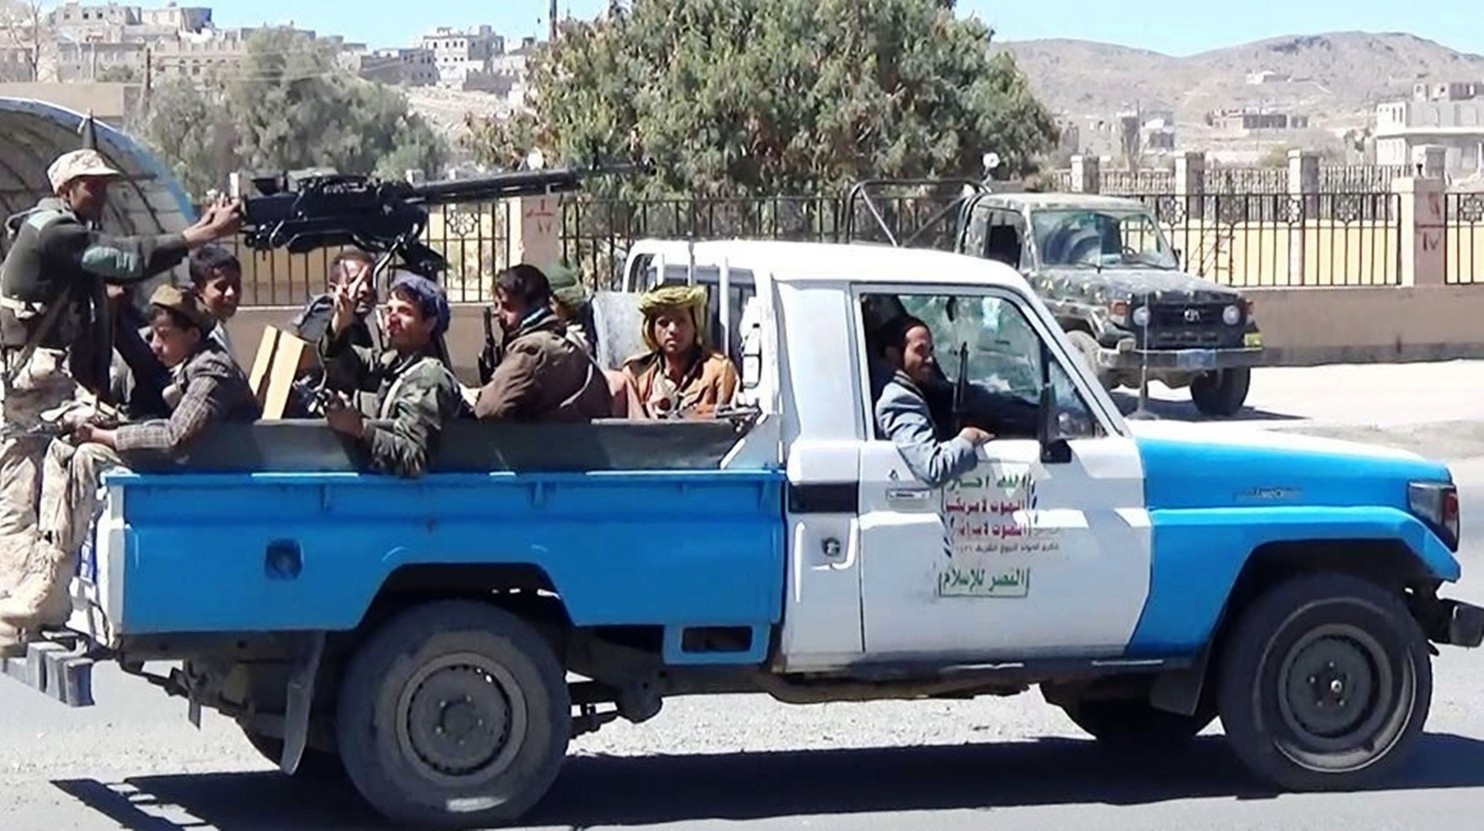 Chiến binh vũ trang chiếm trại đặc nhiệm Mỹ ở Yemen - 1